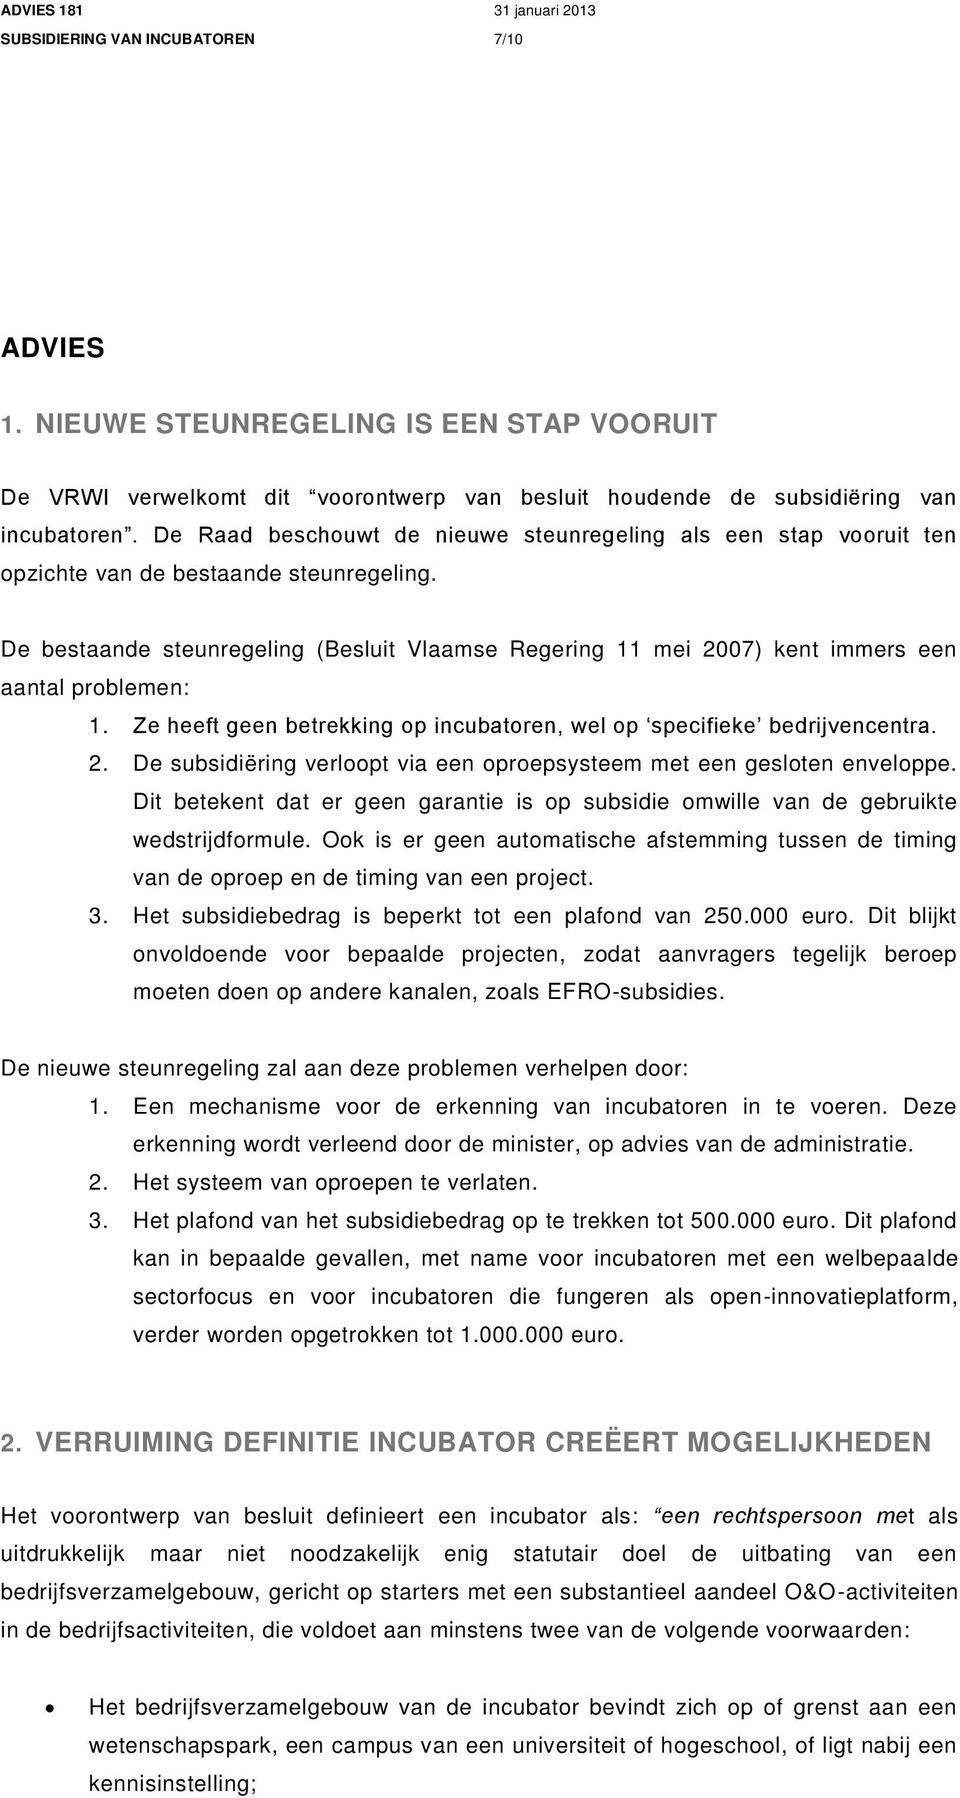 De bestaande steunregeling (Besluit Vlaamse Regering 11 mei 2007) kent immers een aantal problemen: 1. Ze heeft geen betrekking op incubatoren, wel op specifieke bedrijvencentra. 2. De subsidiëring verloopt via een oproepsysteem met een gesloten enveloppe.